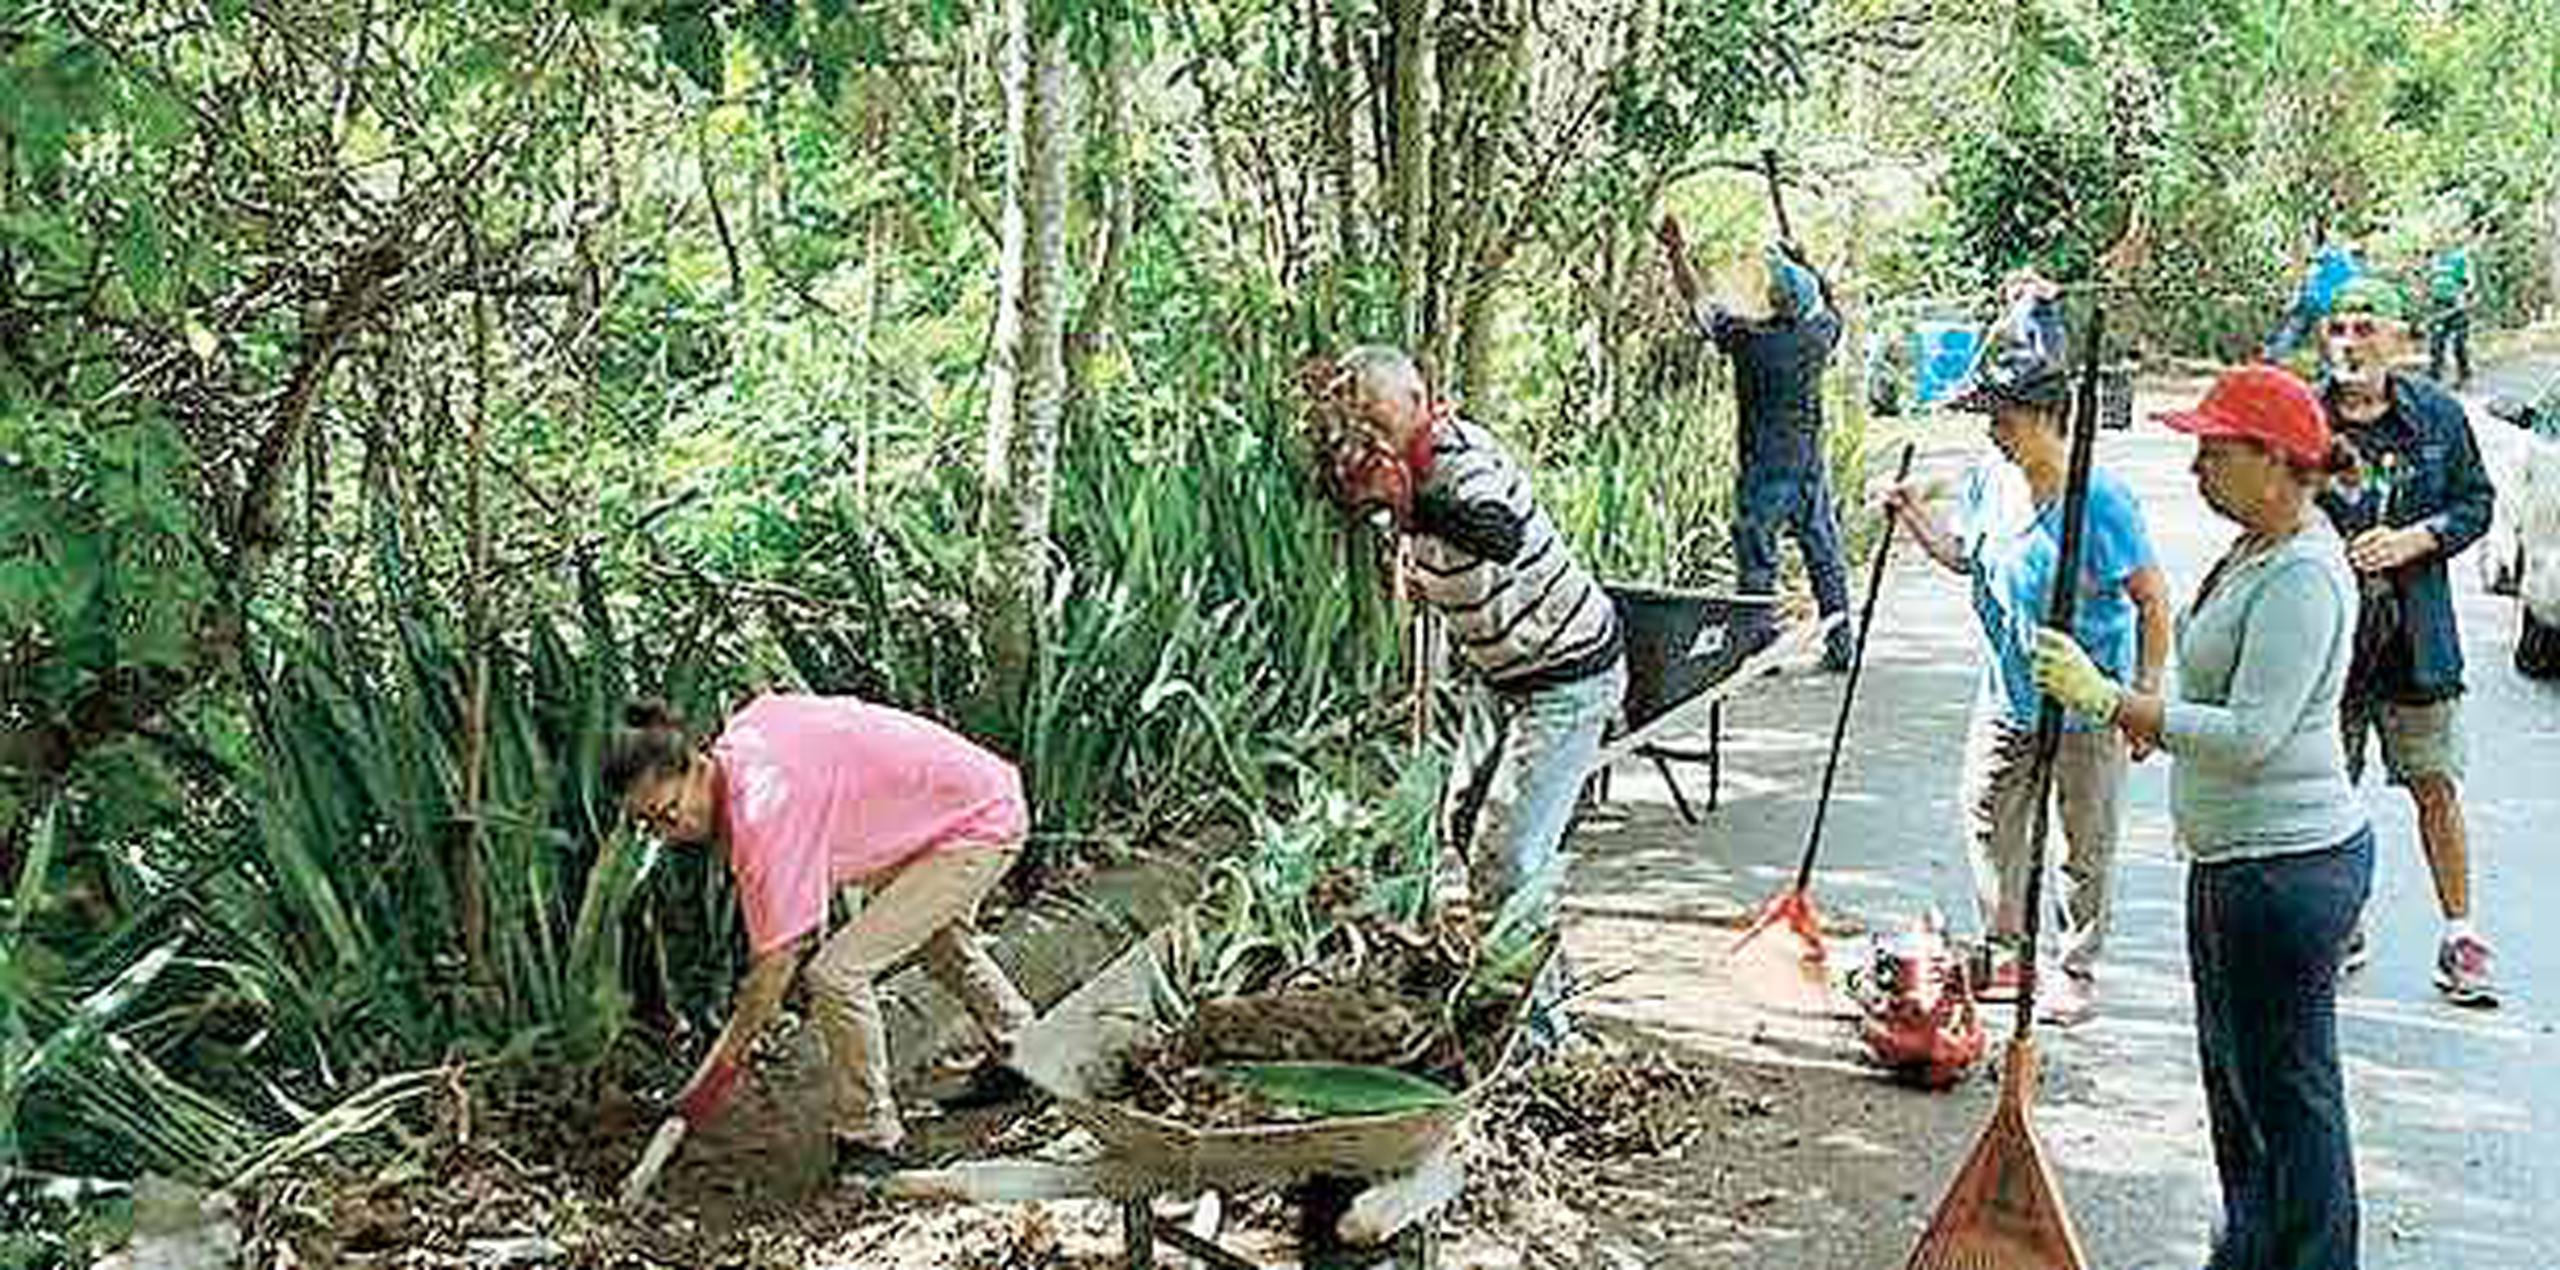 Entre los planes a corto plazo, los residentes quieren construir jardines para darle vida a las calles. Mientras, los sábados se reúnen para limpiar la comunidad. (darisabel.texidor@gfrmedia.com)